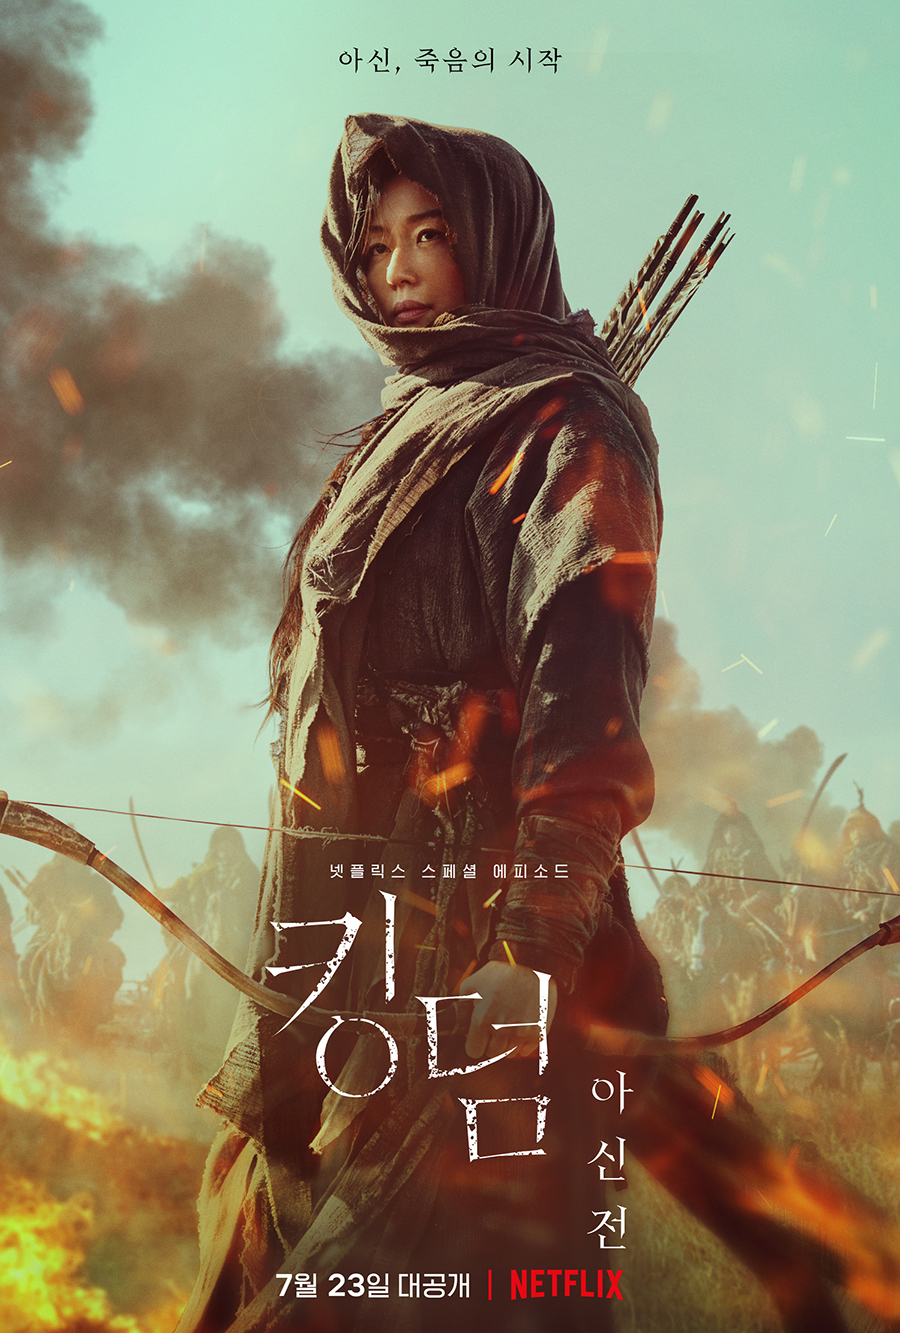 5 Drama Korea diperankan Jun Ji-hyun, artis termahal di Korea Selatan